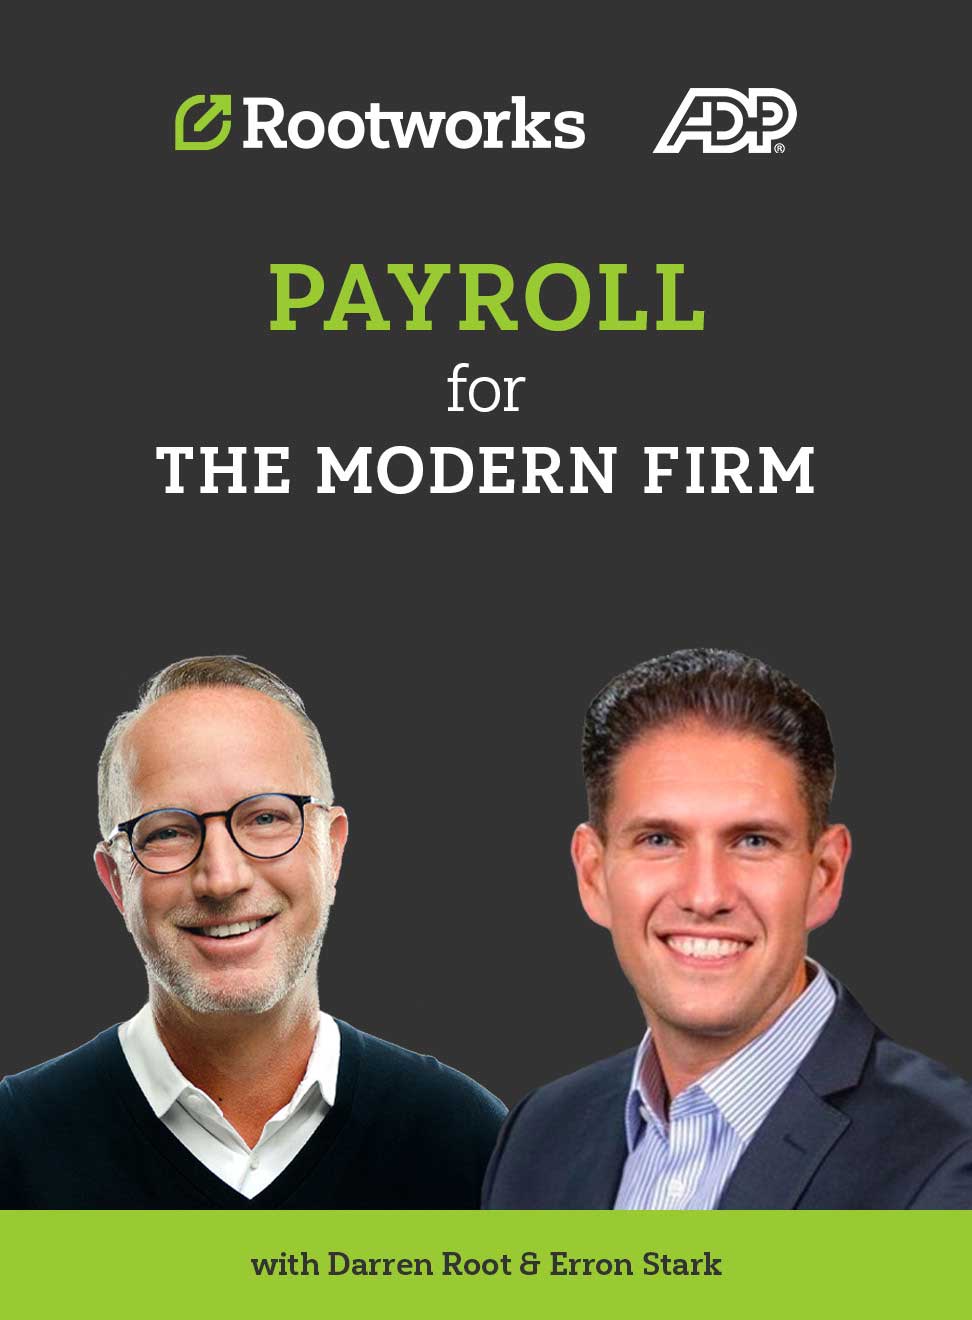 Payroll for the modern firm webinar